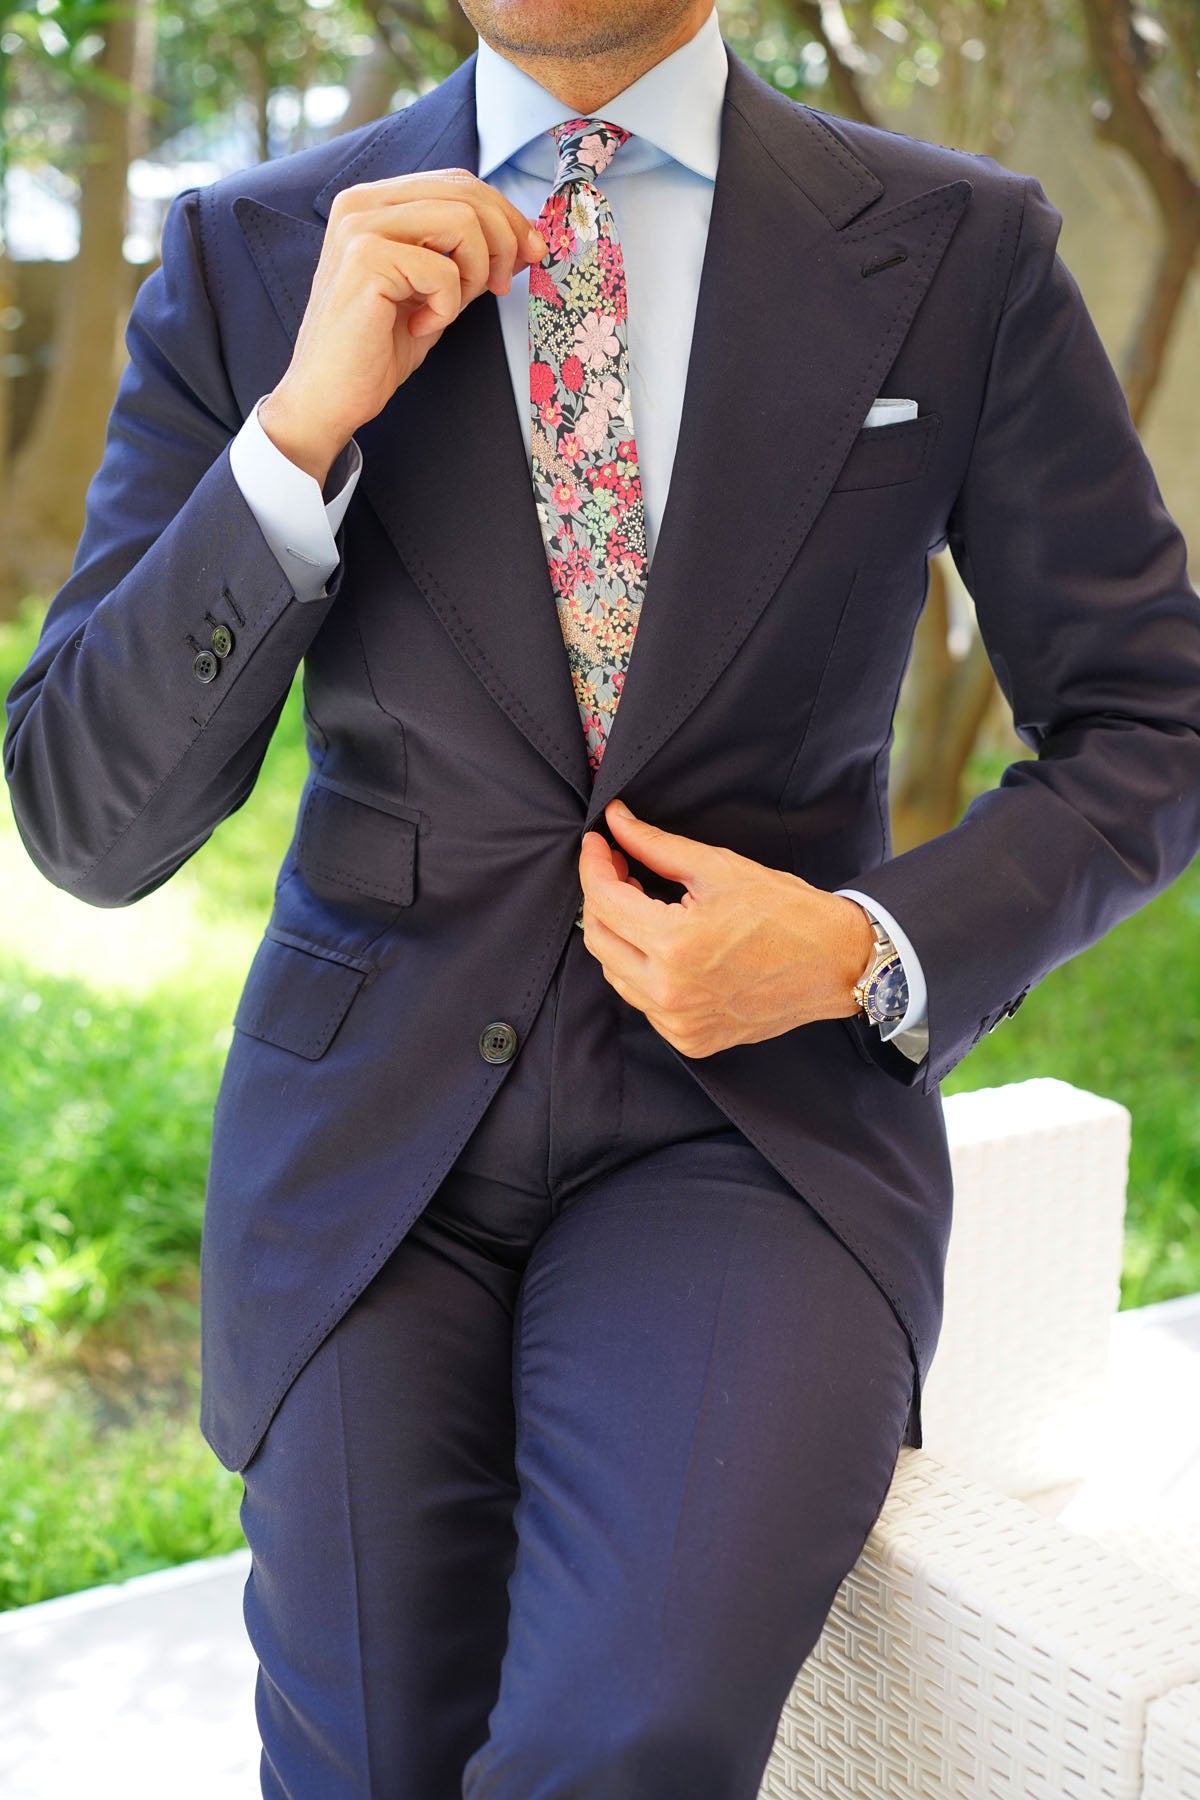 Africacian Kirstenbosch Flower Skinny Tie | Men's Floral Slim Ties AU ...